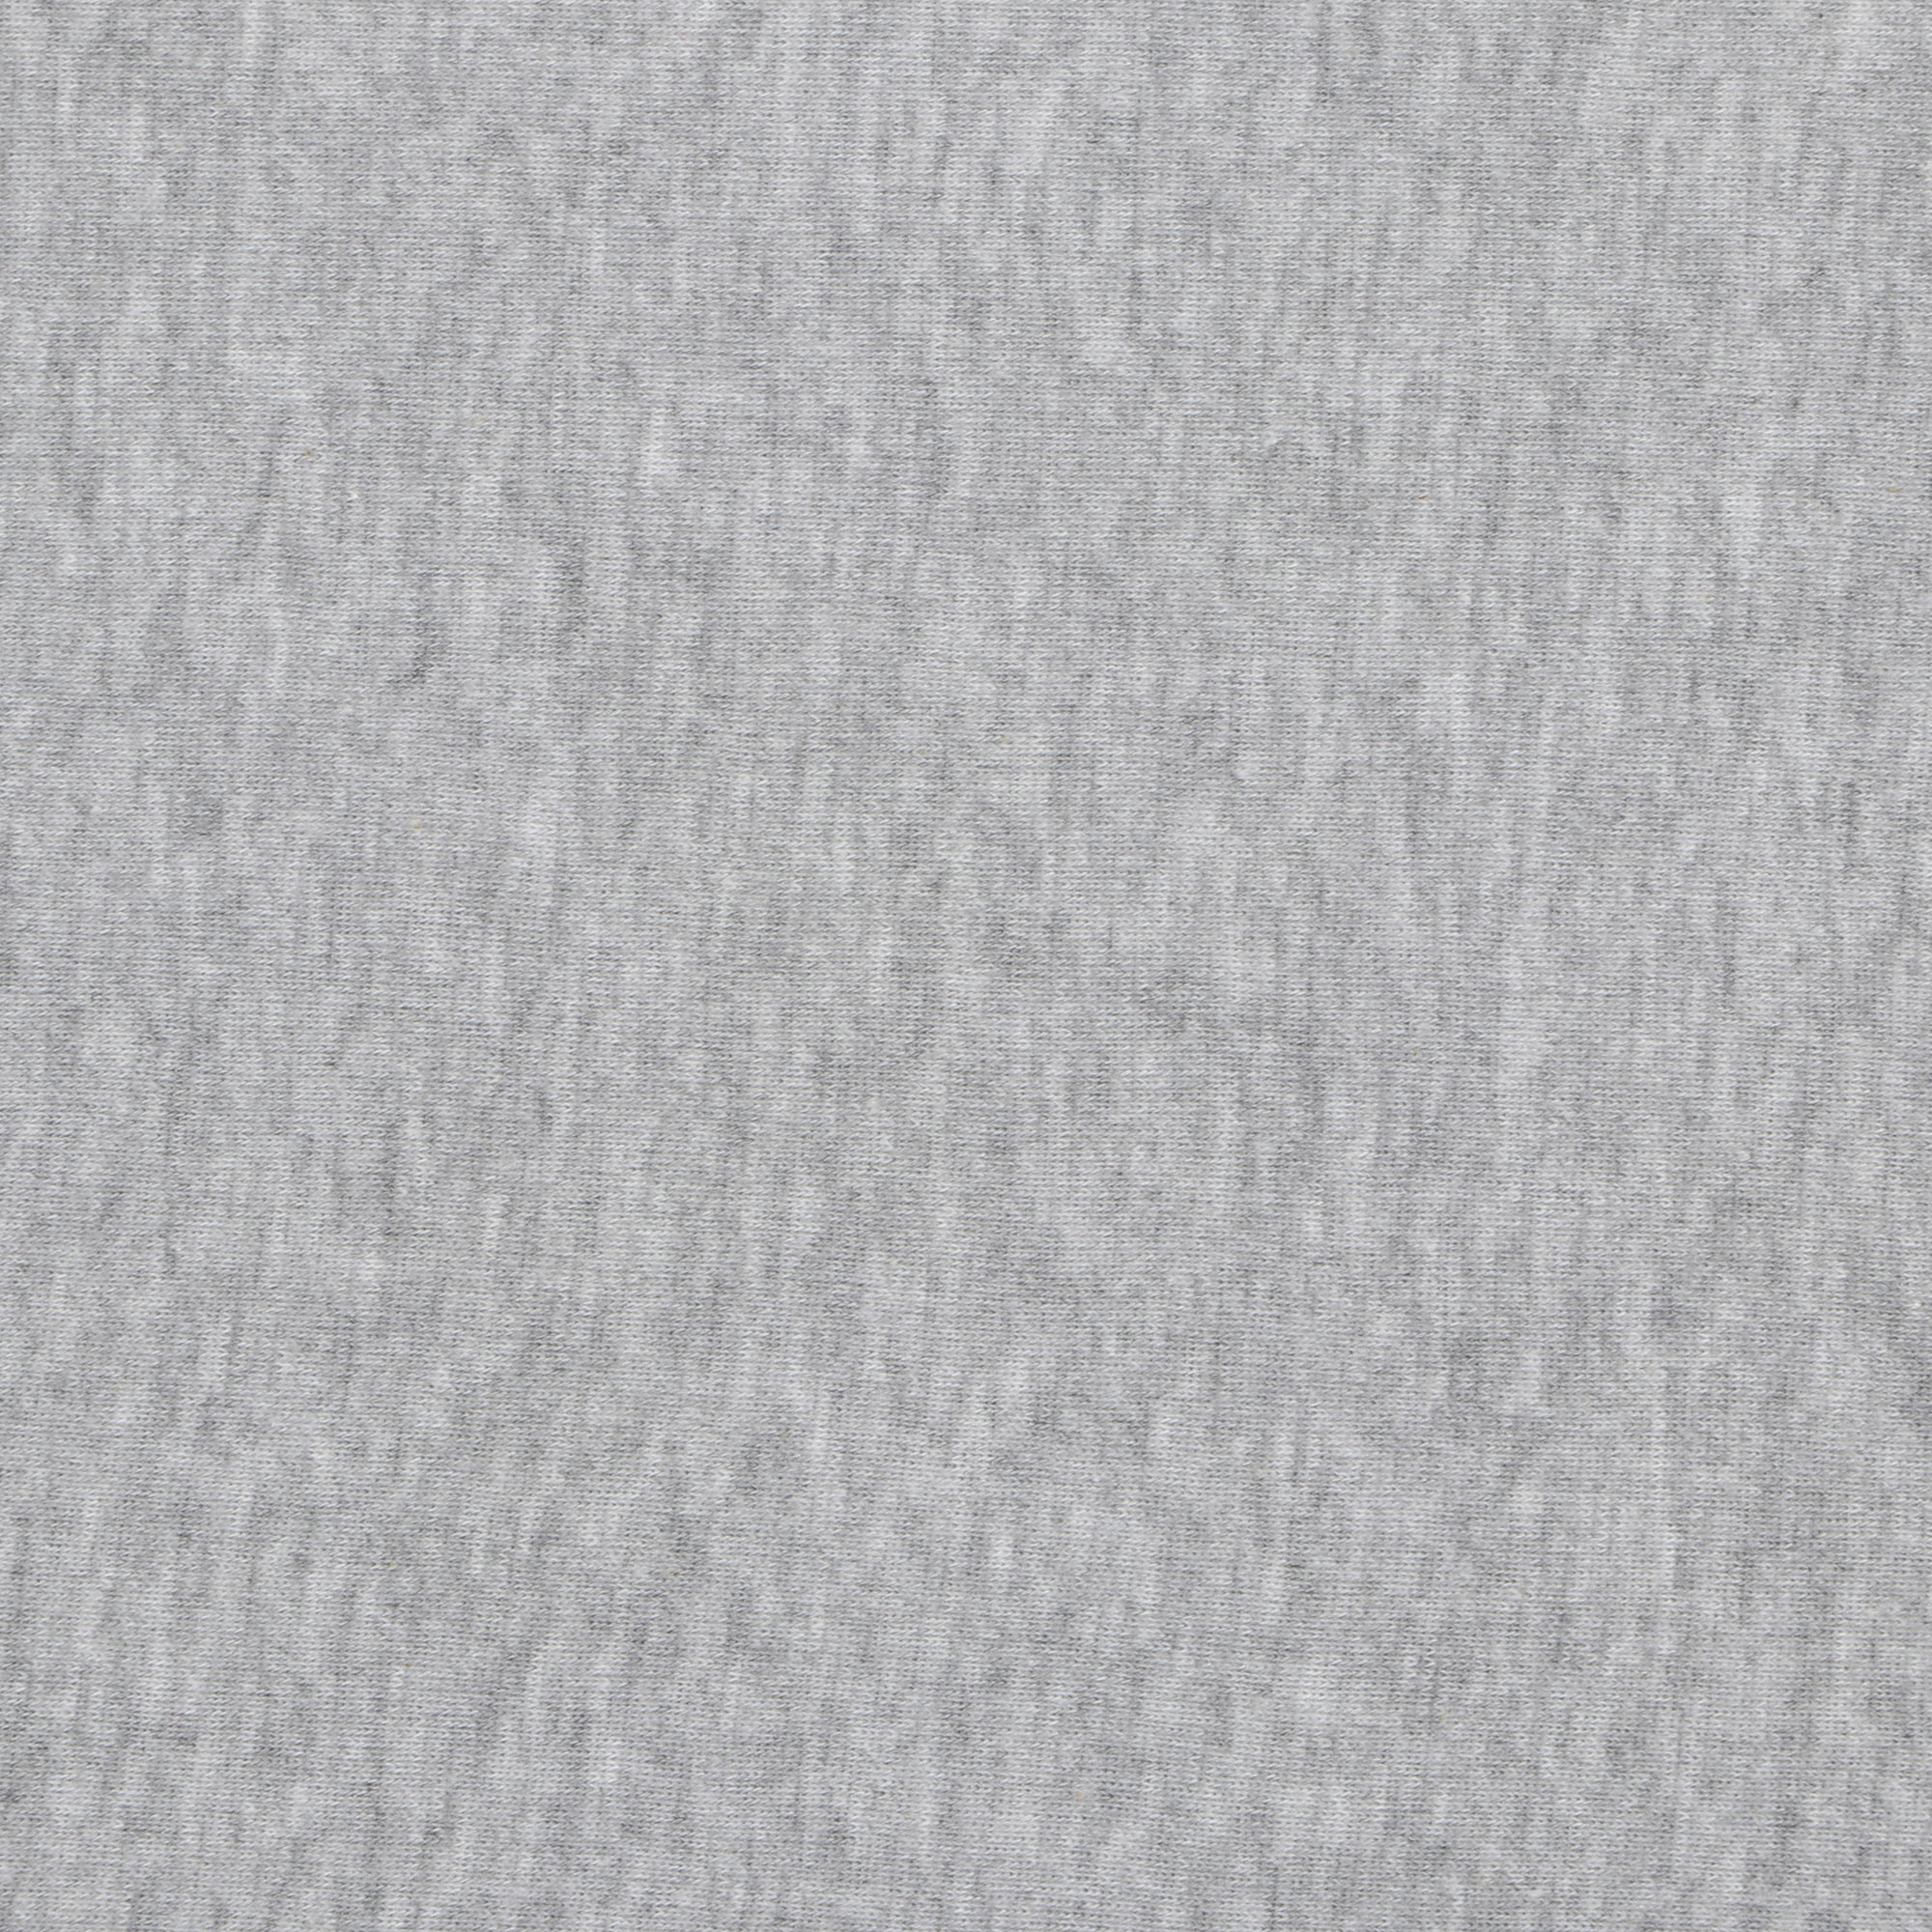 Футболка мужская Pantelemone 54 серая, цвет серый, размер 54 - фото 3